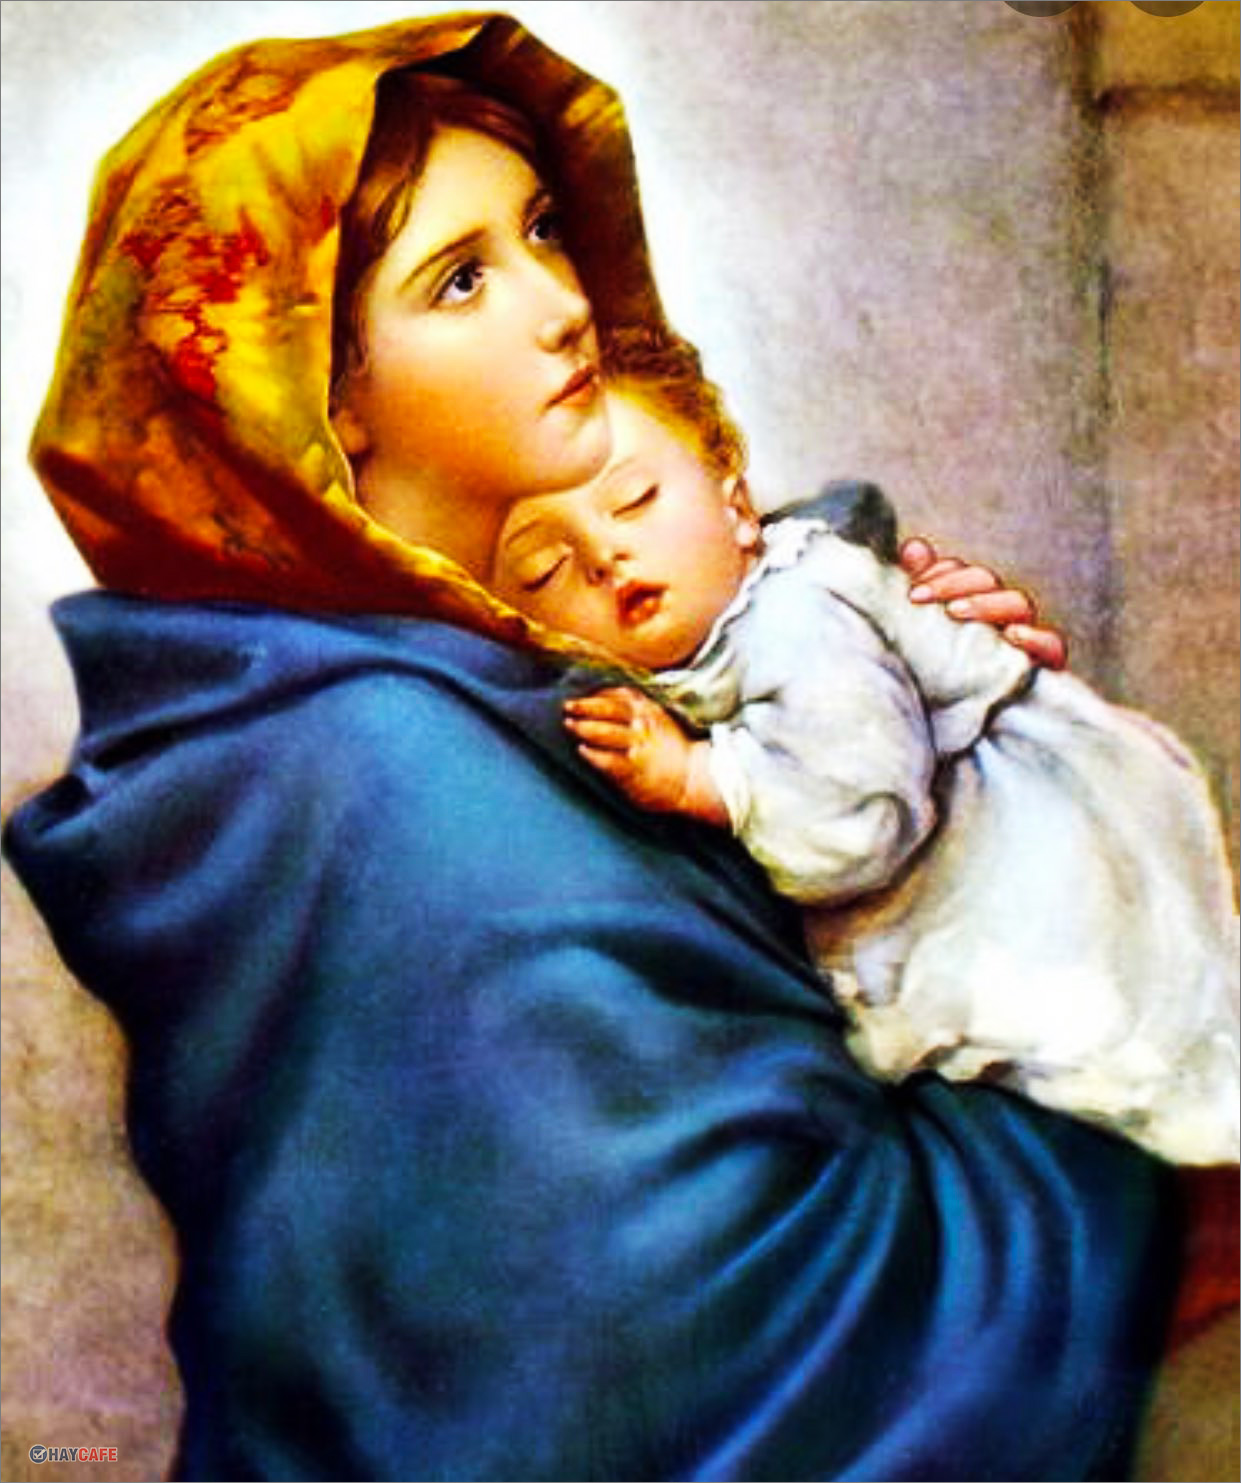 99 Ảnh Đức Mẹ Maria Đẹp Hằng Cứu Giúp Ban Ơn Thiêng Liêng